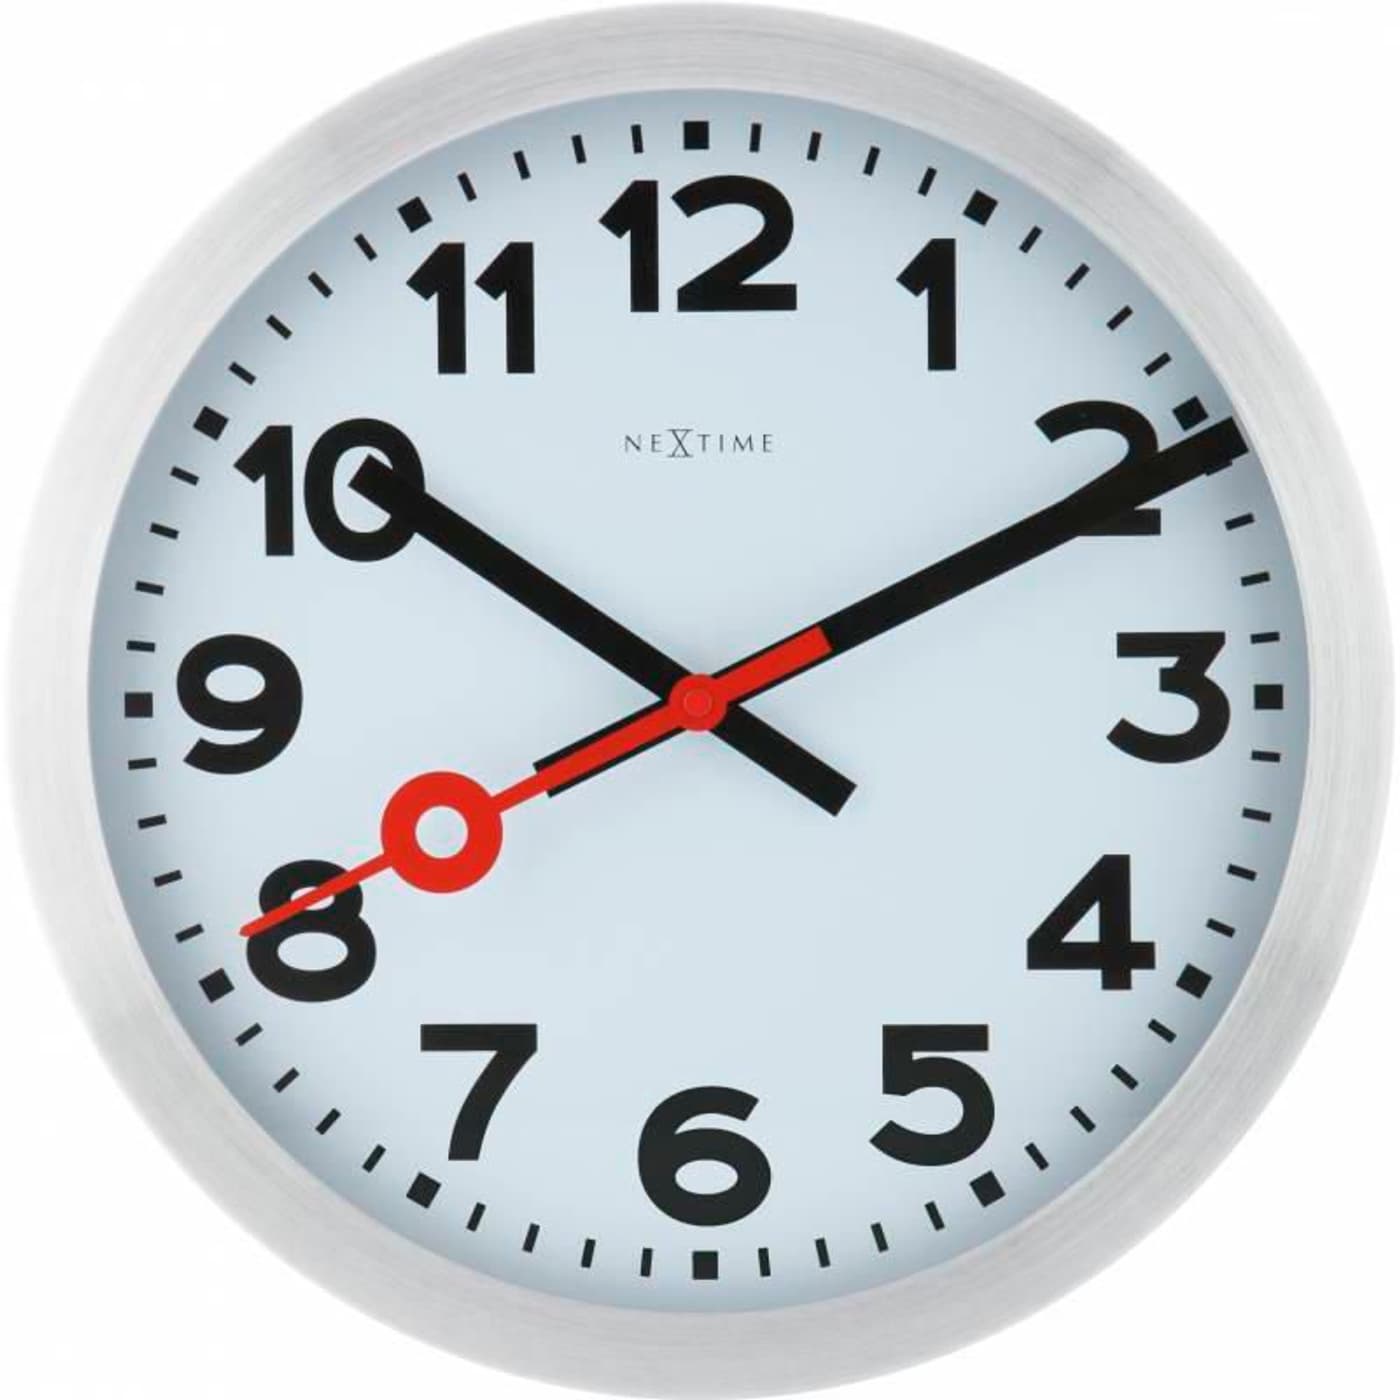 nextime focus clock movement